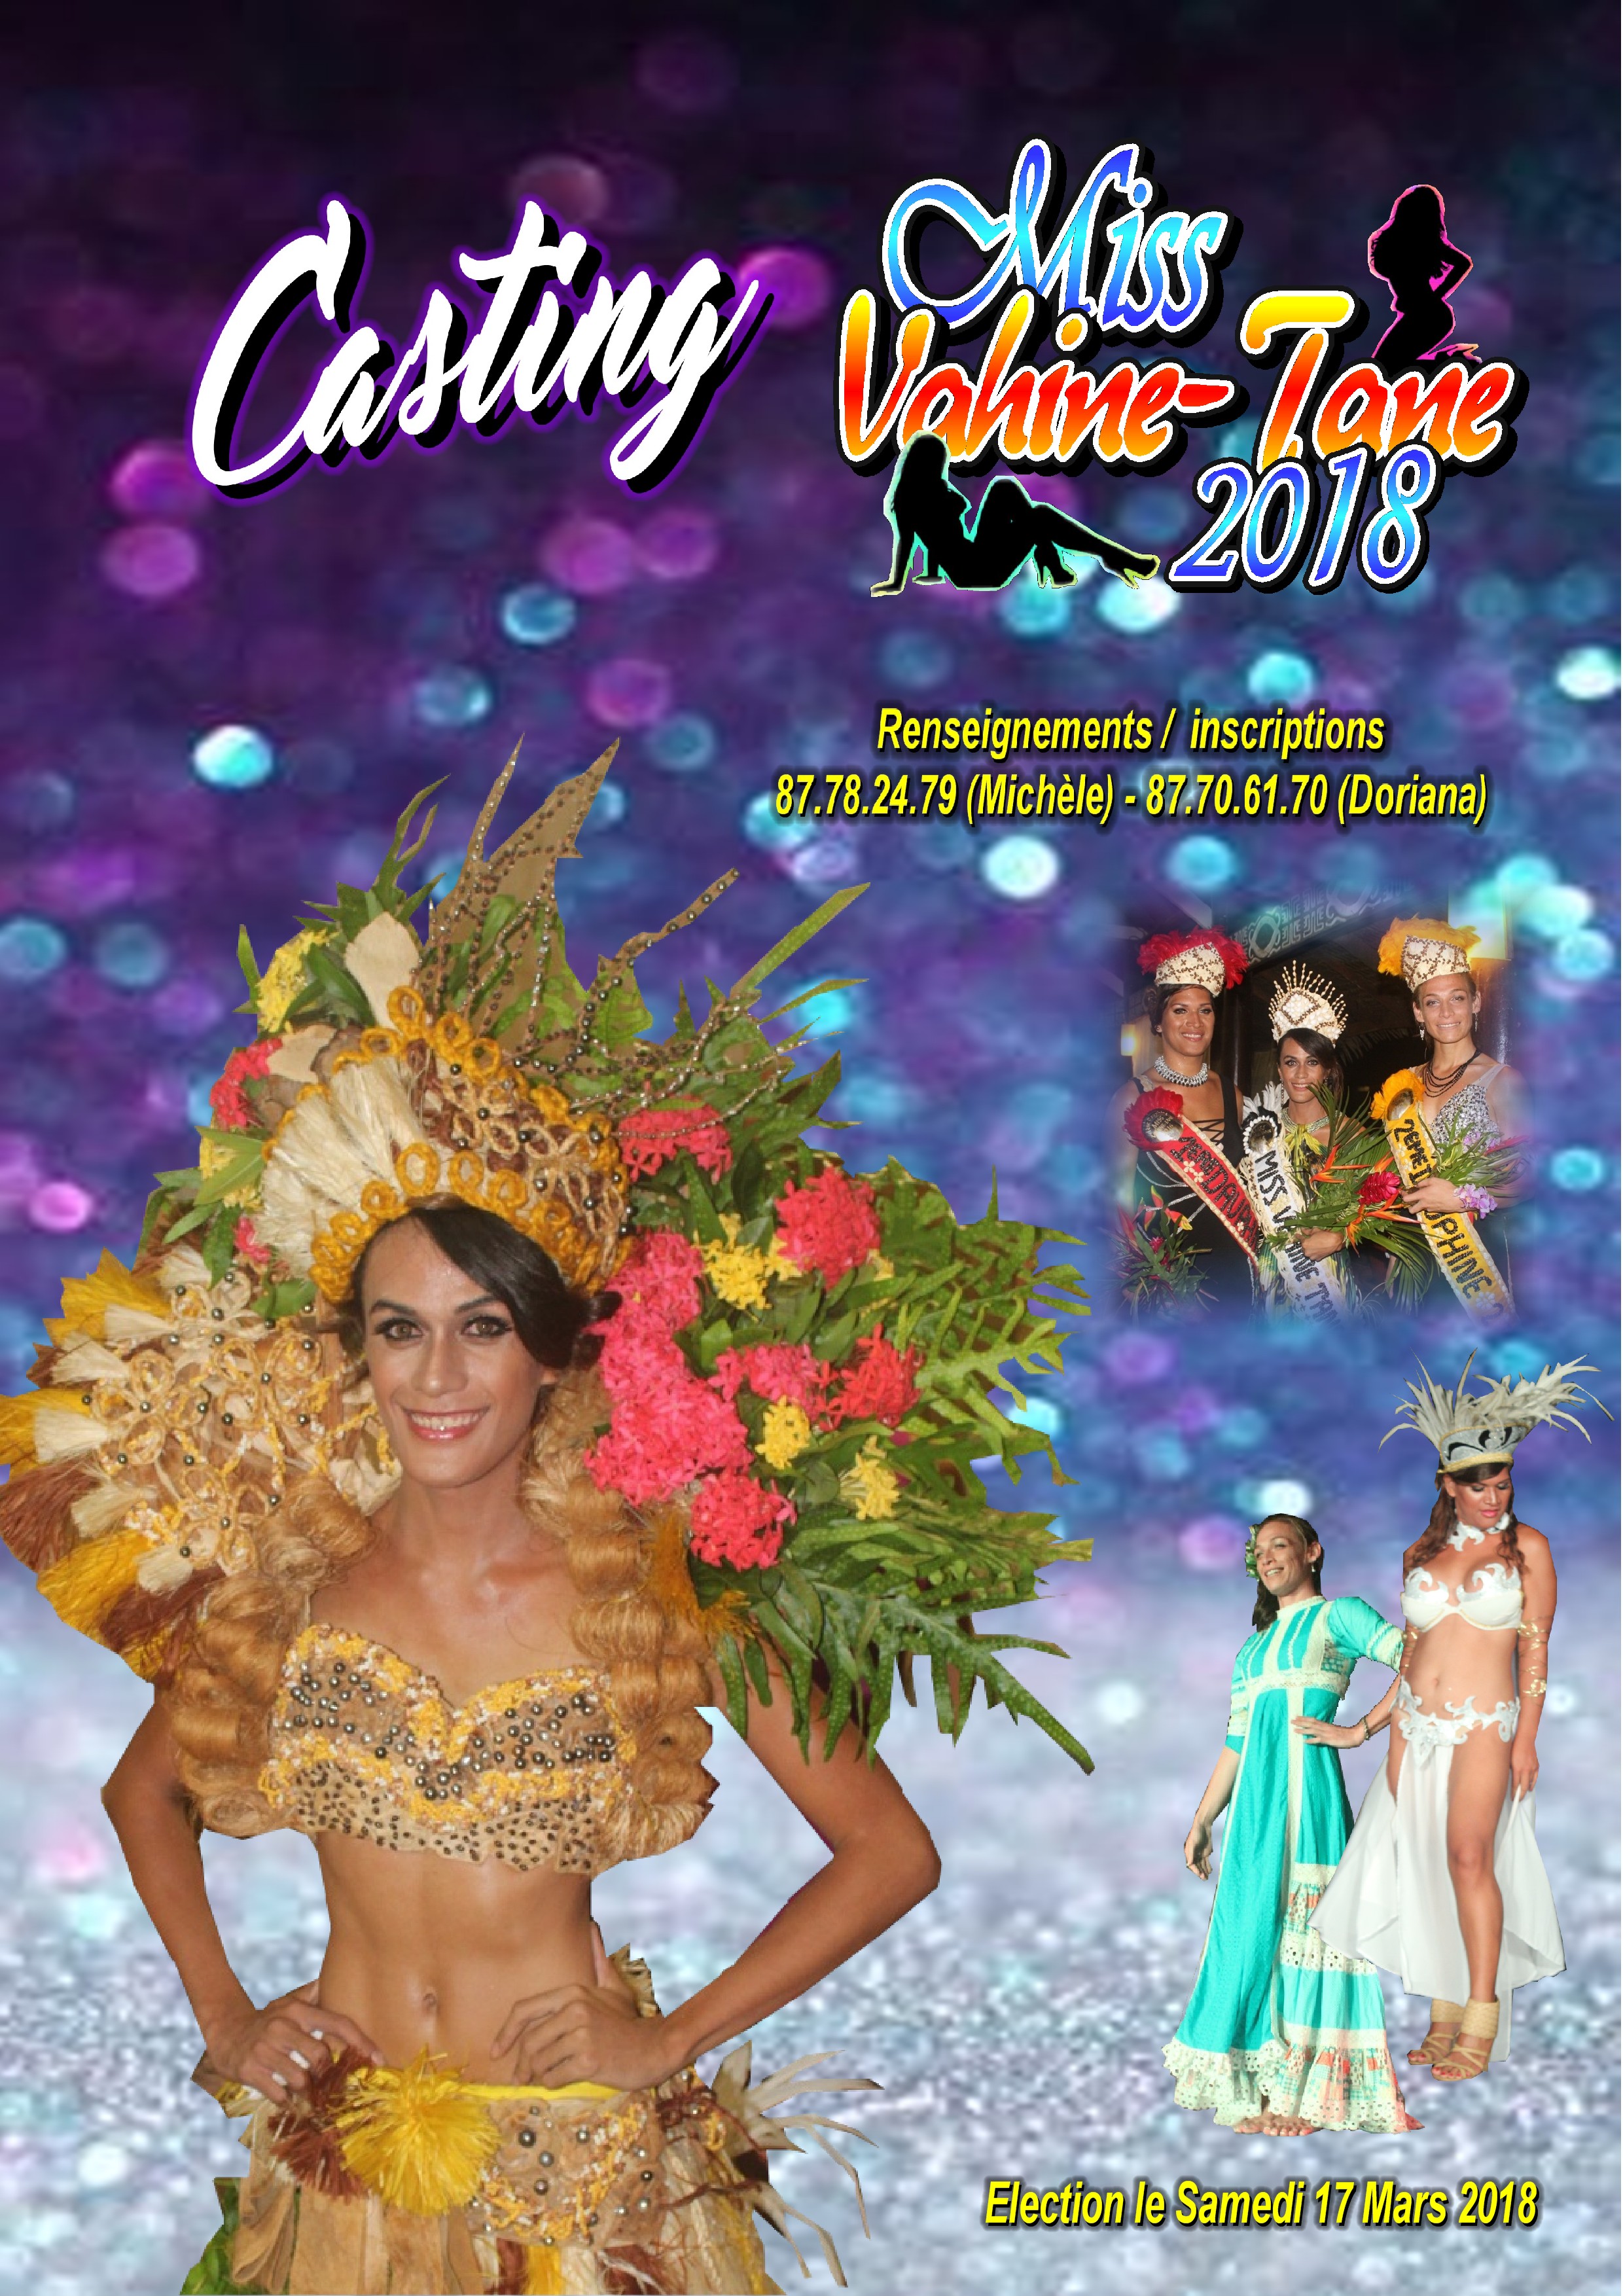 Le casting de Miss Vahine-Tane 2018 est lancé